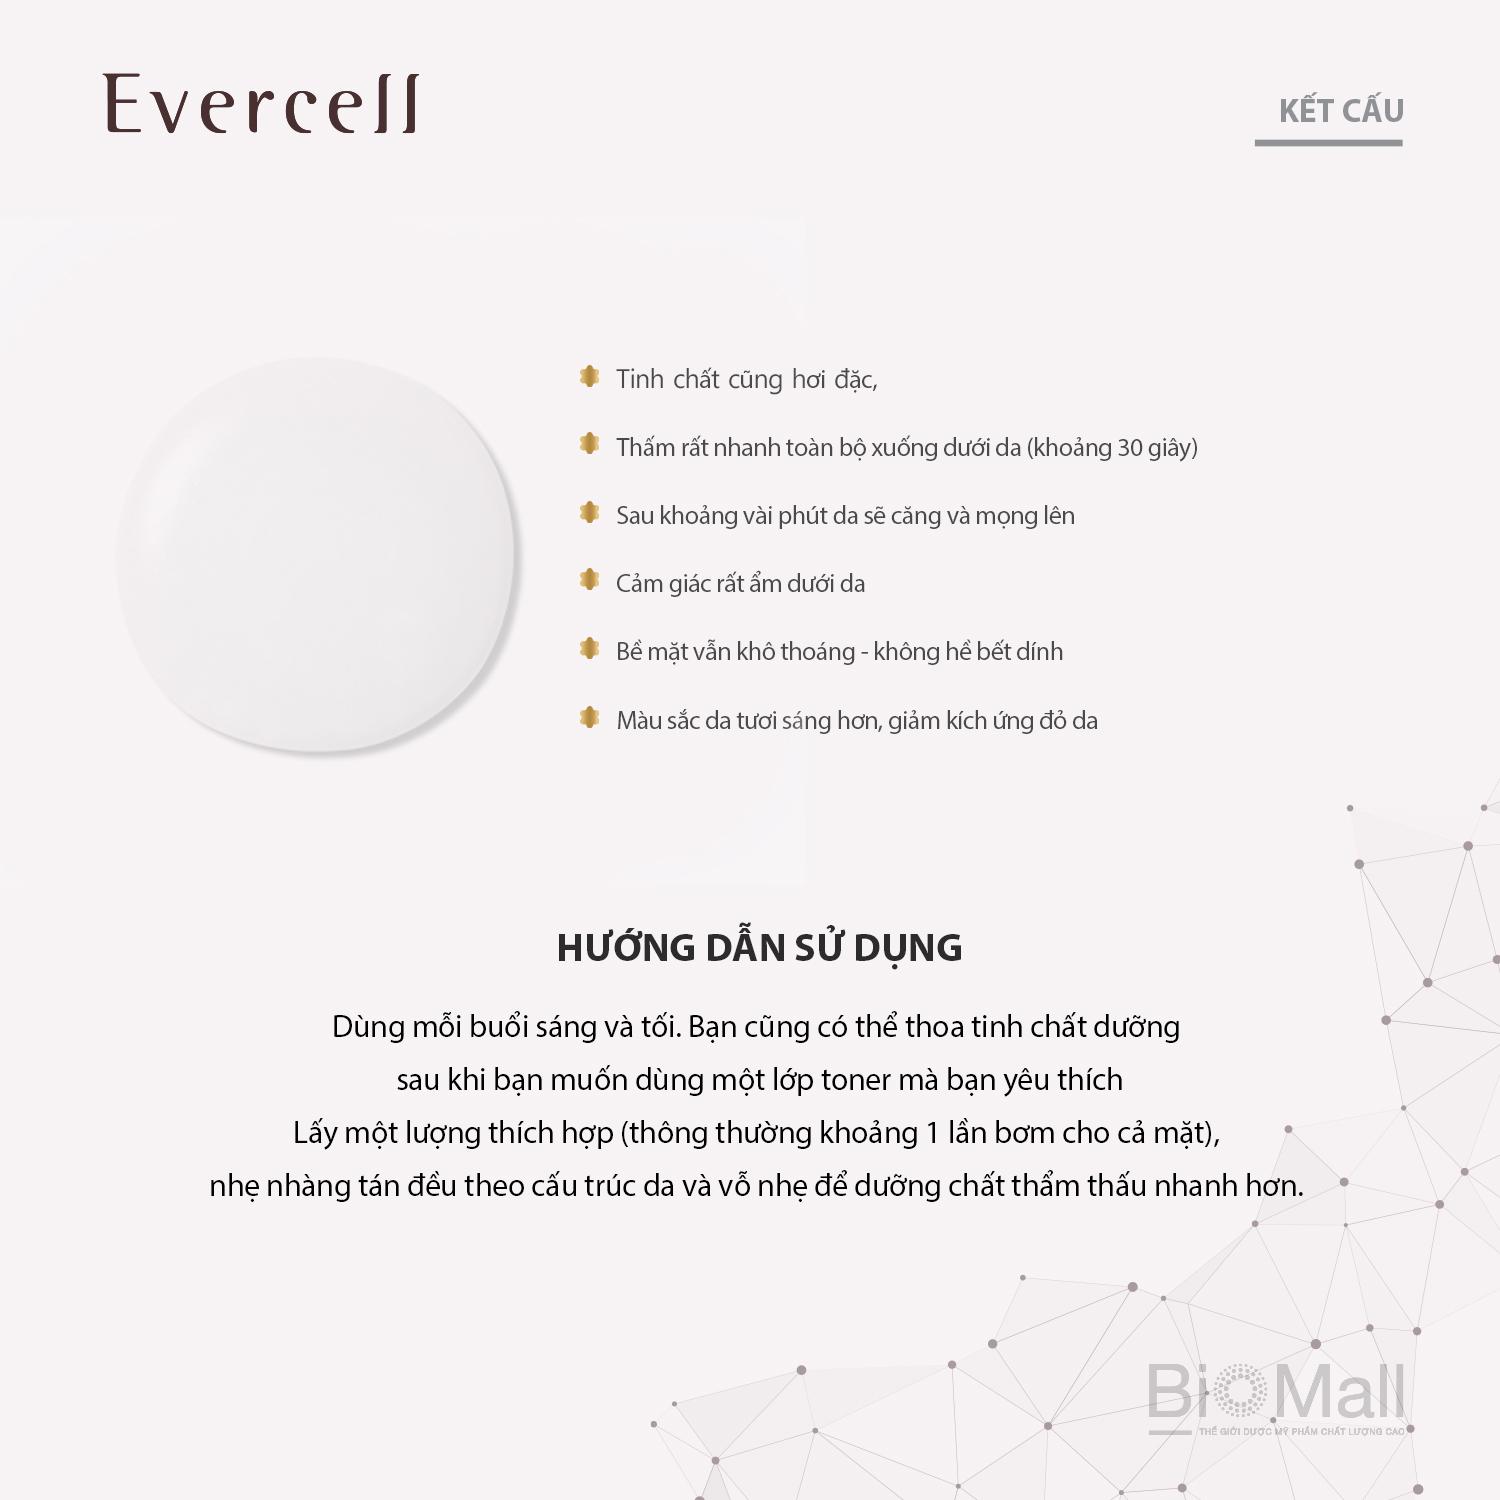 Evercell Magic White Drop  4 chai x 10ml